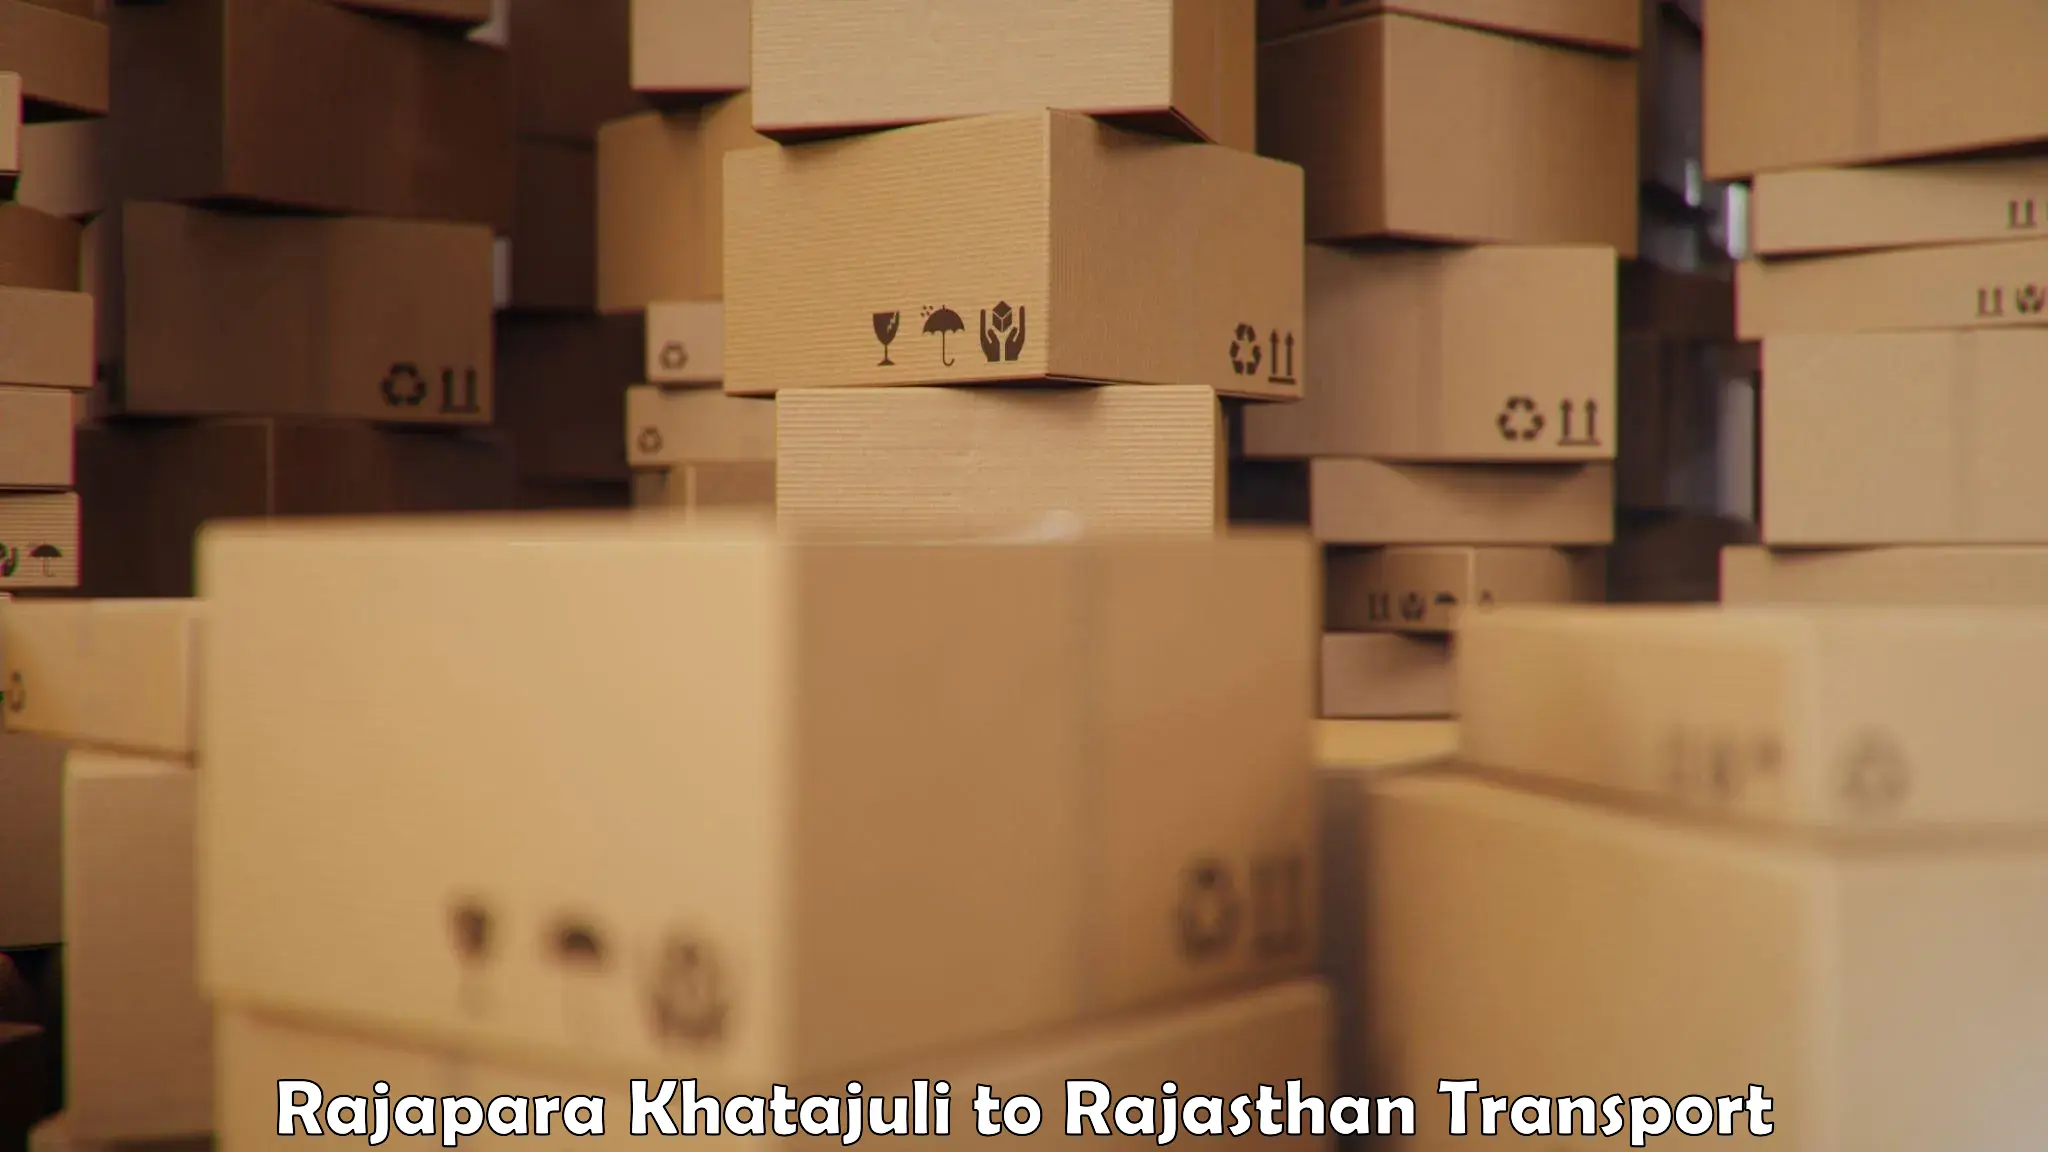 Air cargo transport services Rajapara Khatajuli to Viratnagar